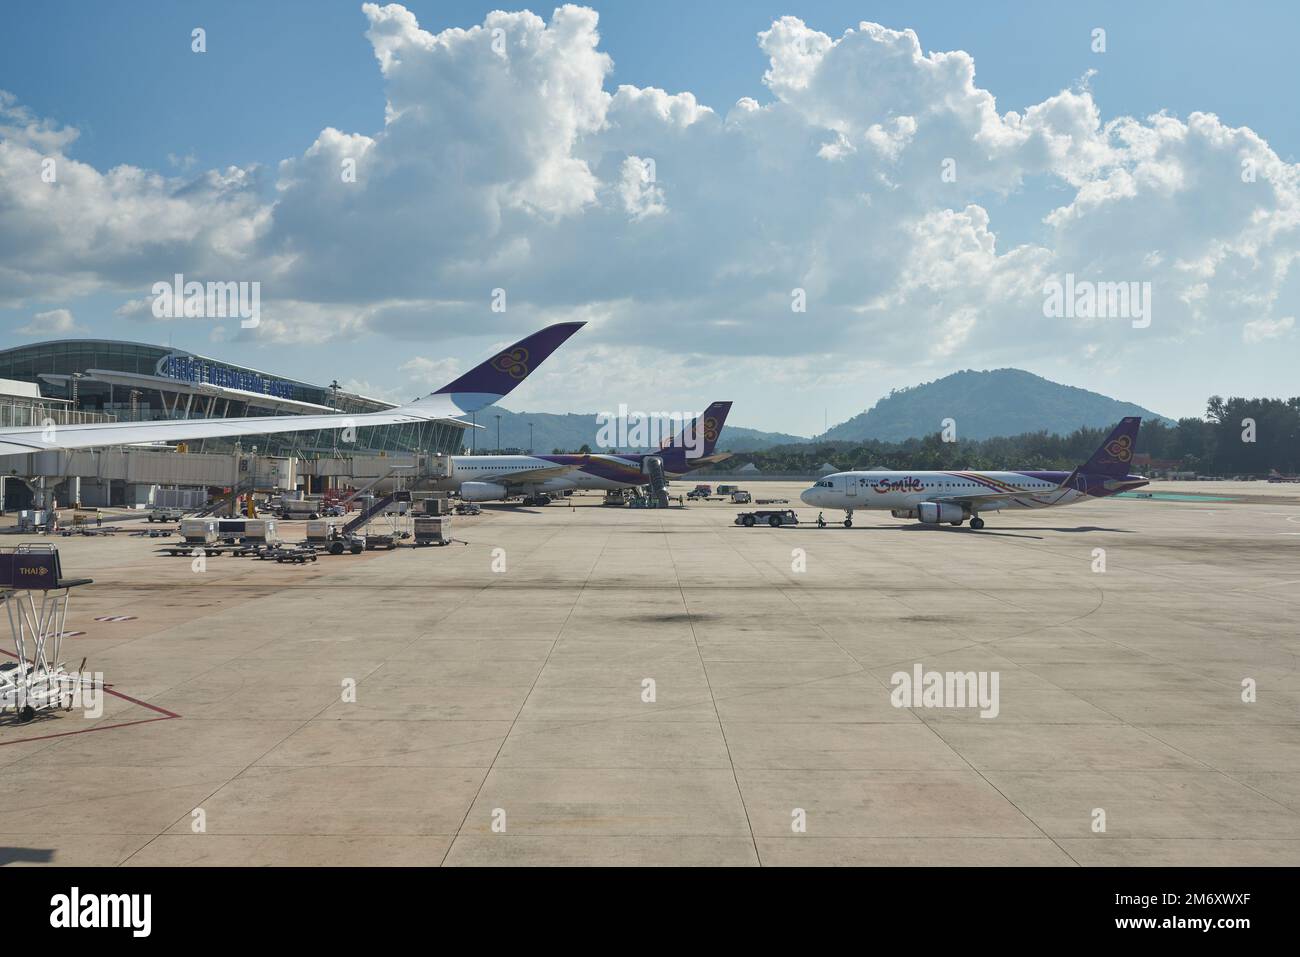 PHUKET, THAILAND - CIRCA JANUAR 2020: Internationaler Flughafen Phuket aus Sicht des Thai Airways Airbus A350 am Tag. Stockfoto